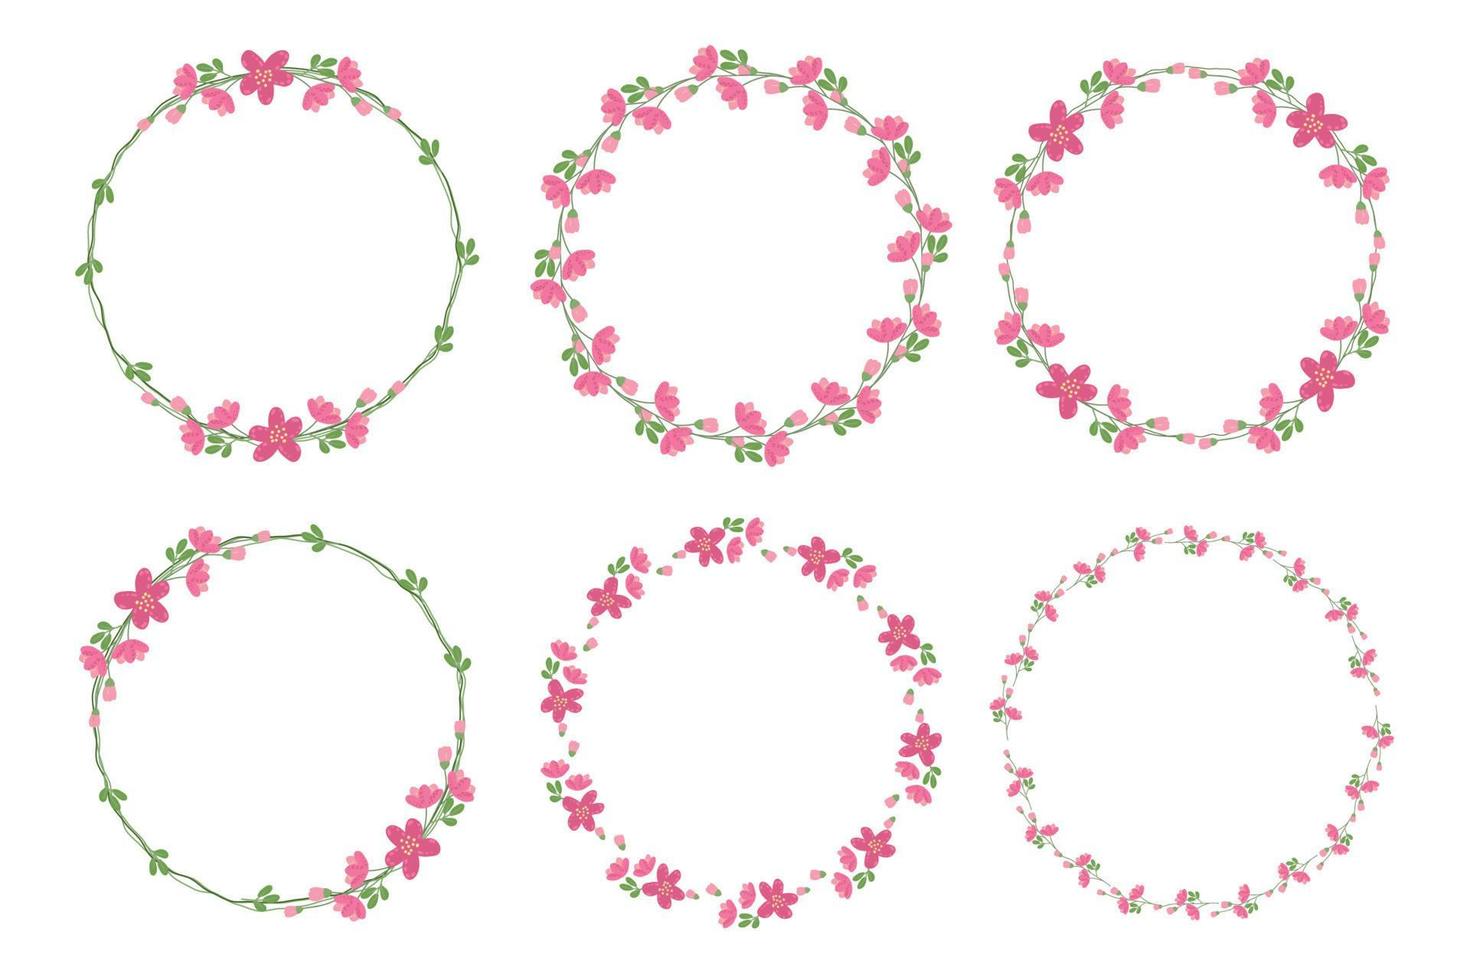 coleção de molduras de coroa de flores rosa mínimo estilo plano bonito para ilustração de vetores eps10 de dia dos namorados ou primavera